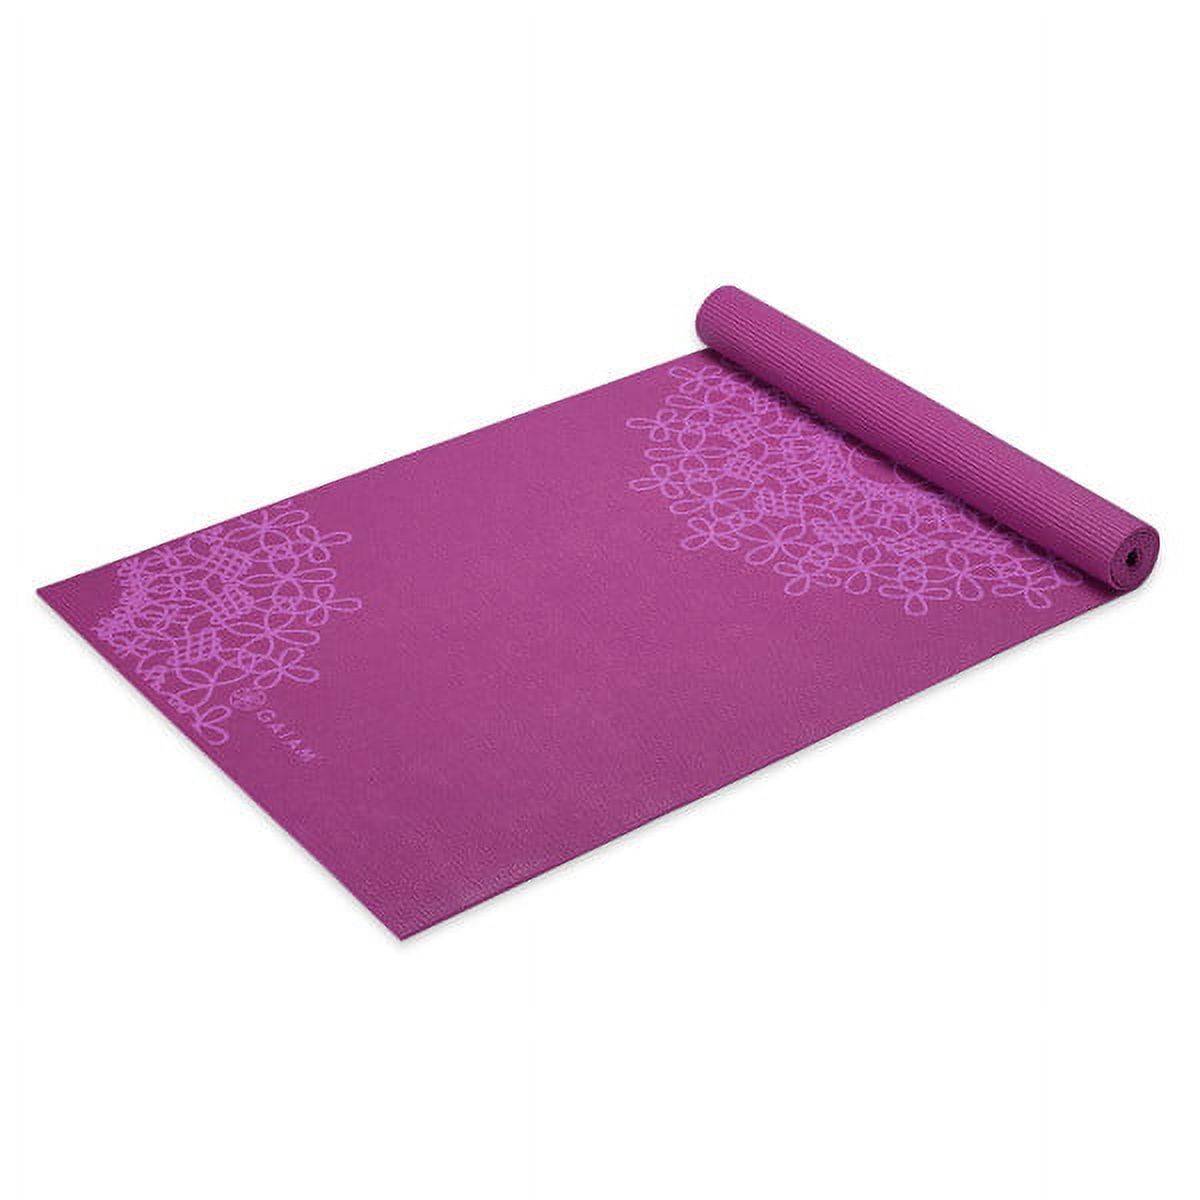 Gaiam Yoga Mat, Spring Fern, 4-mm